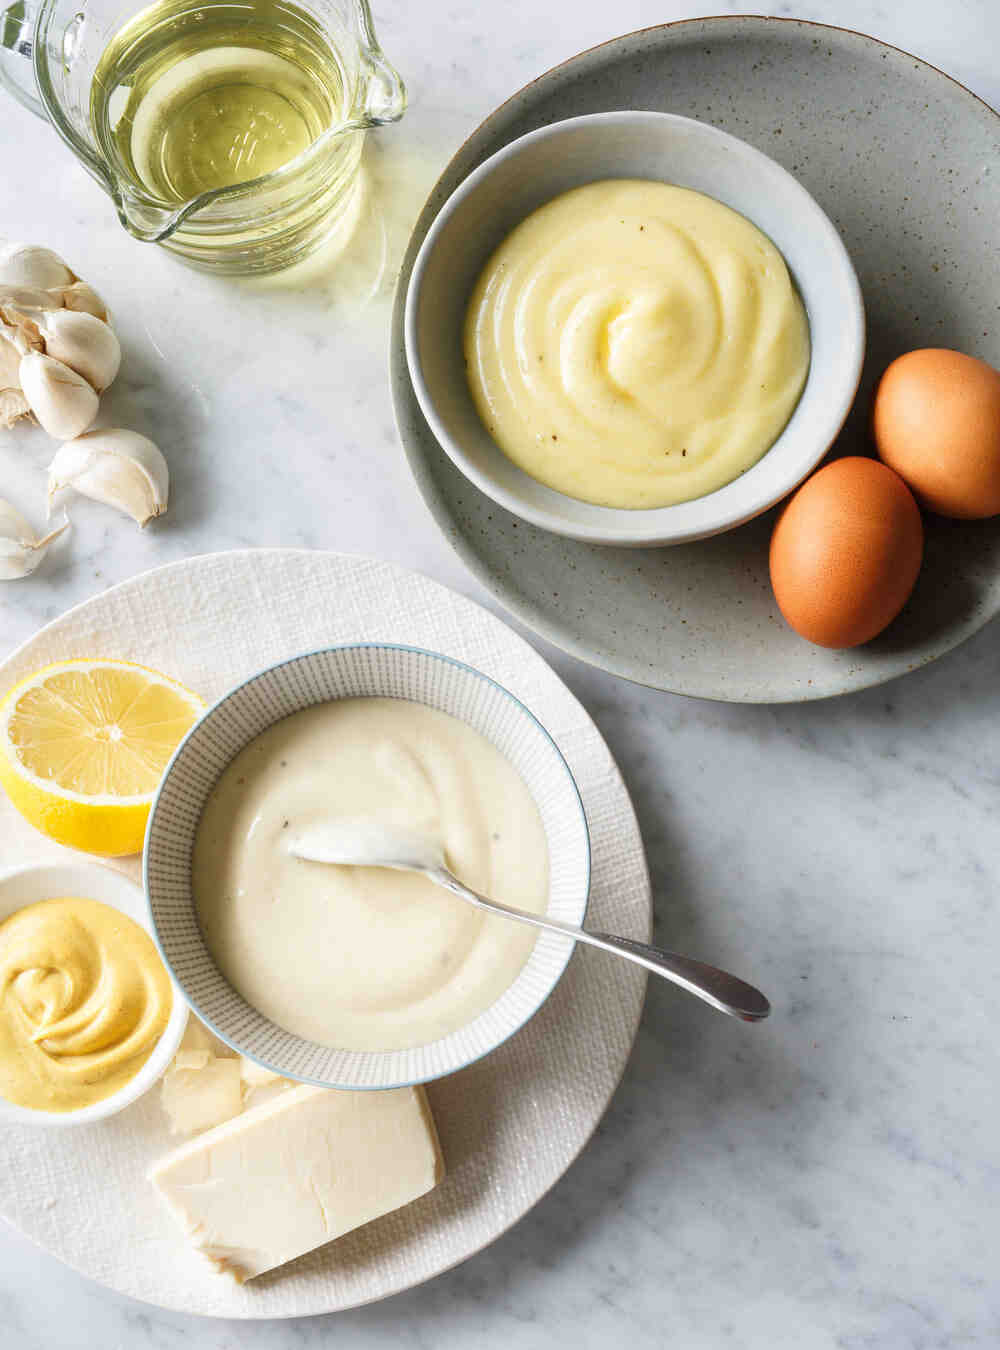 Comment la mayonnaise est-elle fabriquée?